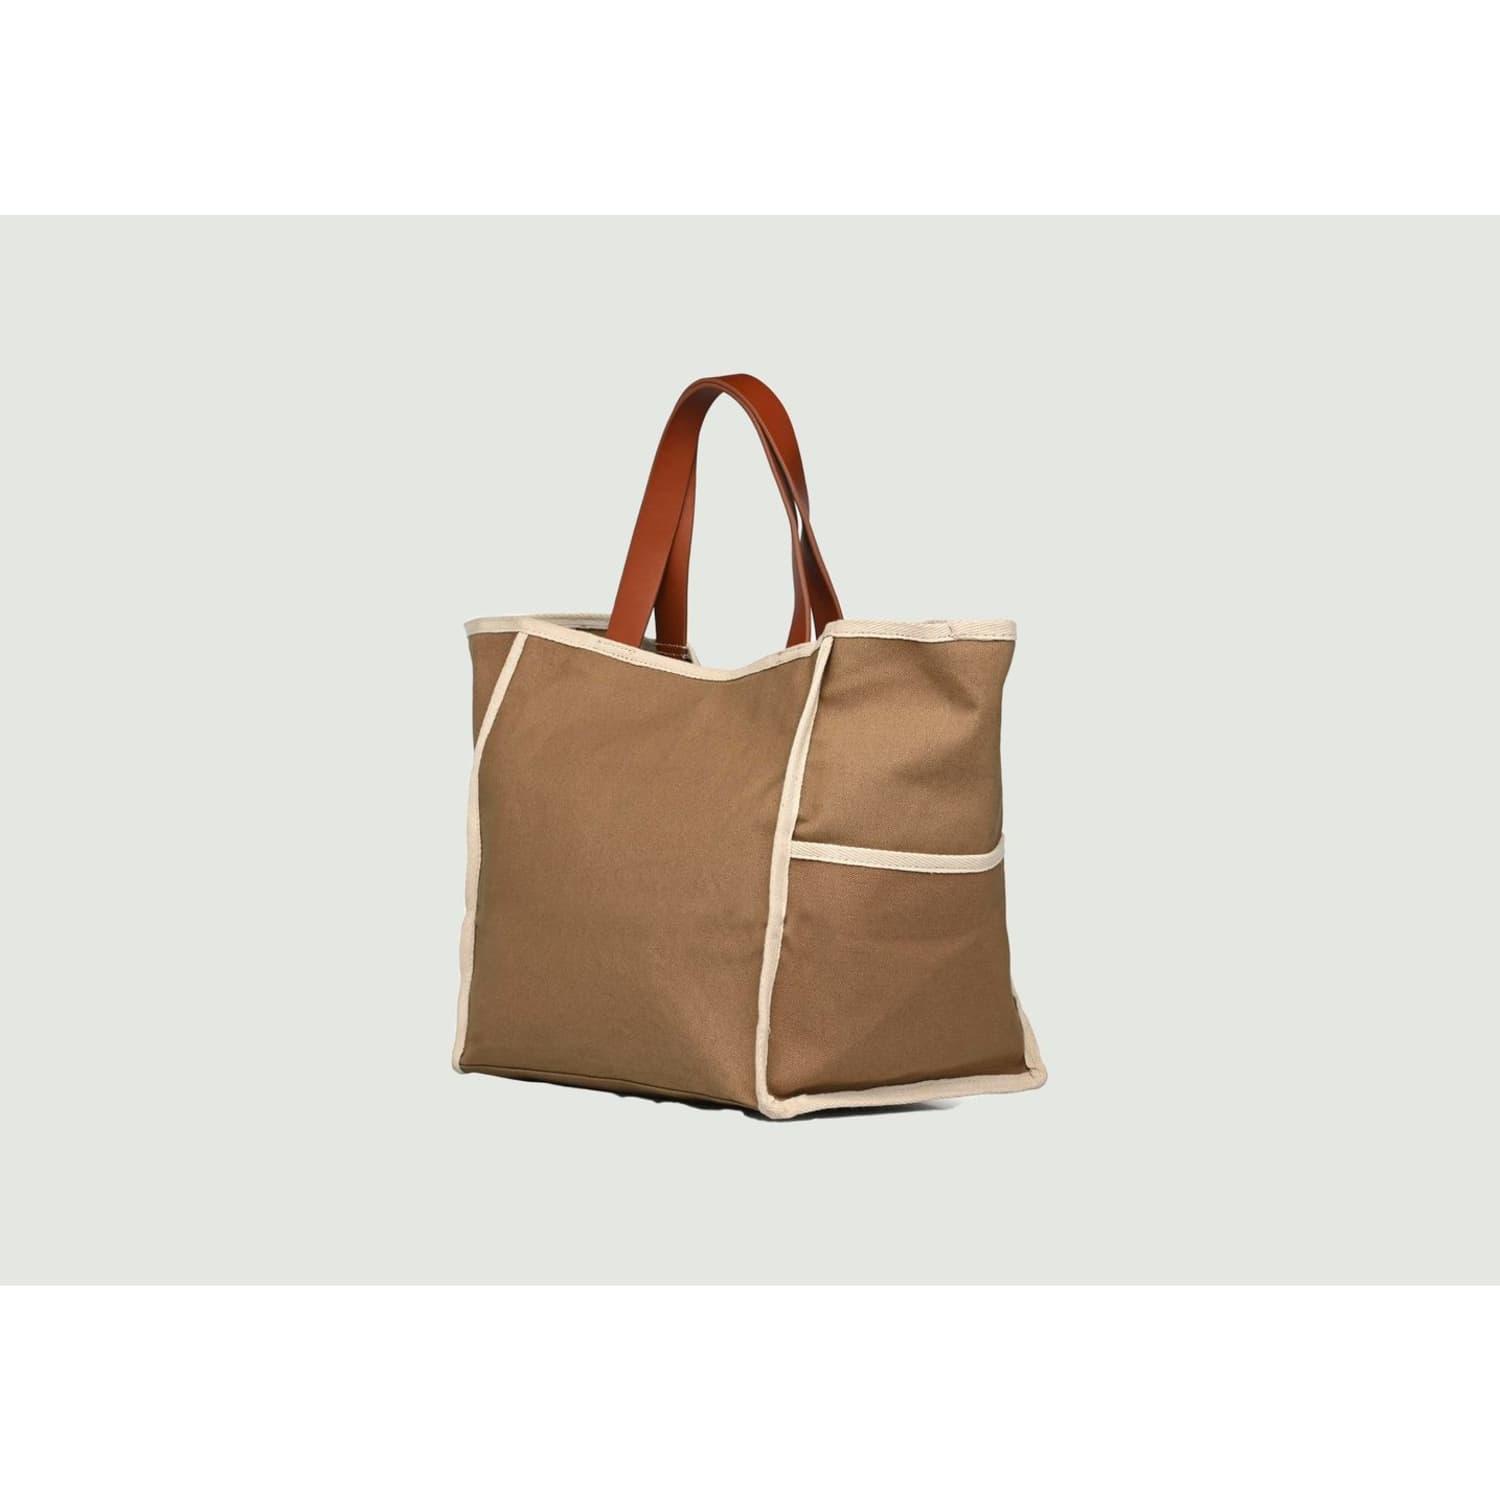 Shopping / Beach Bag with Black Handles - 35cm x 41cm